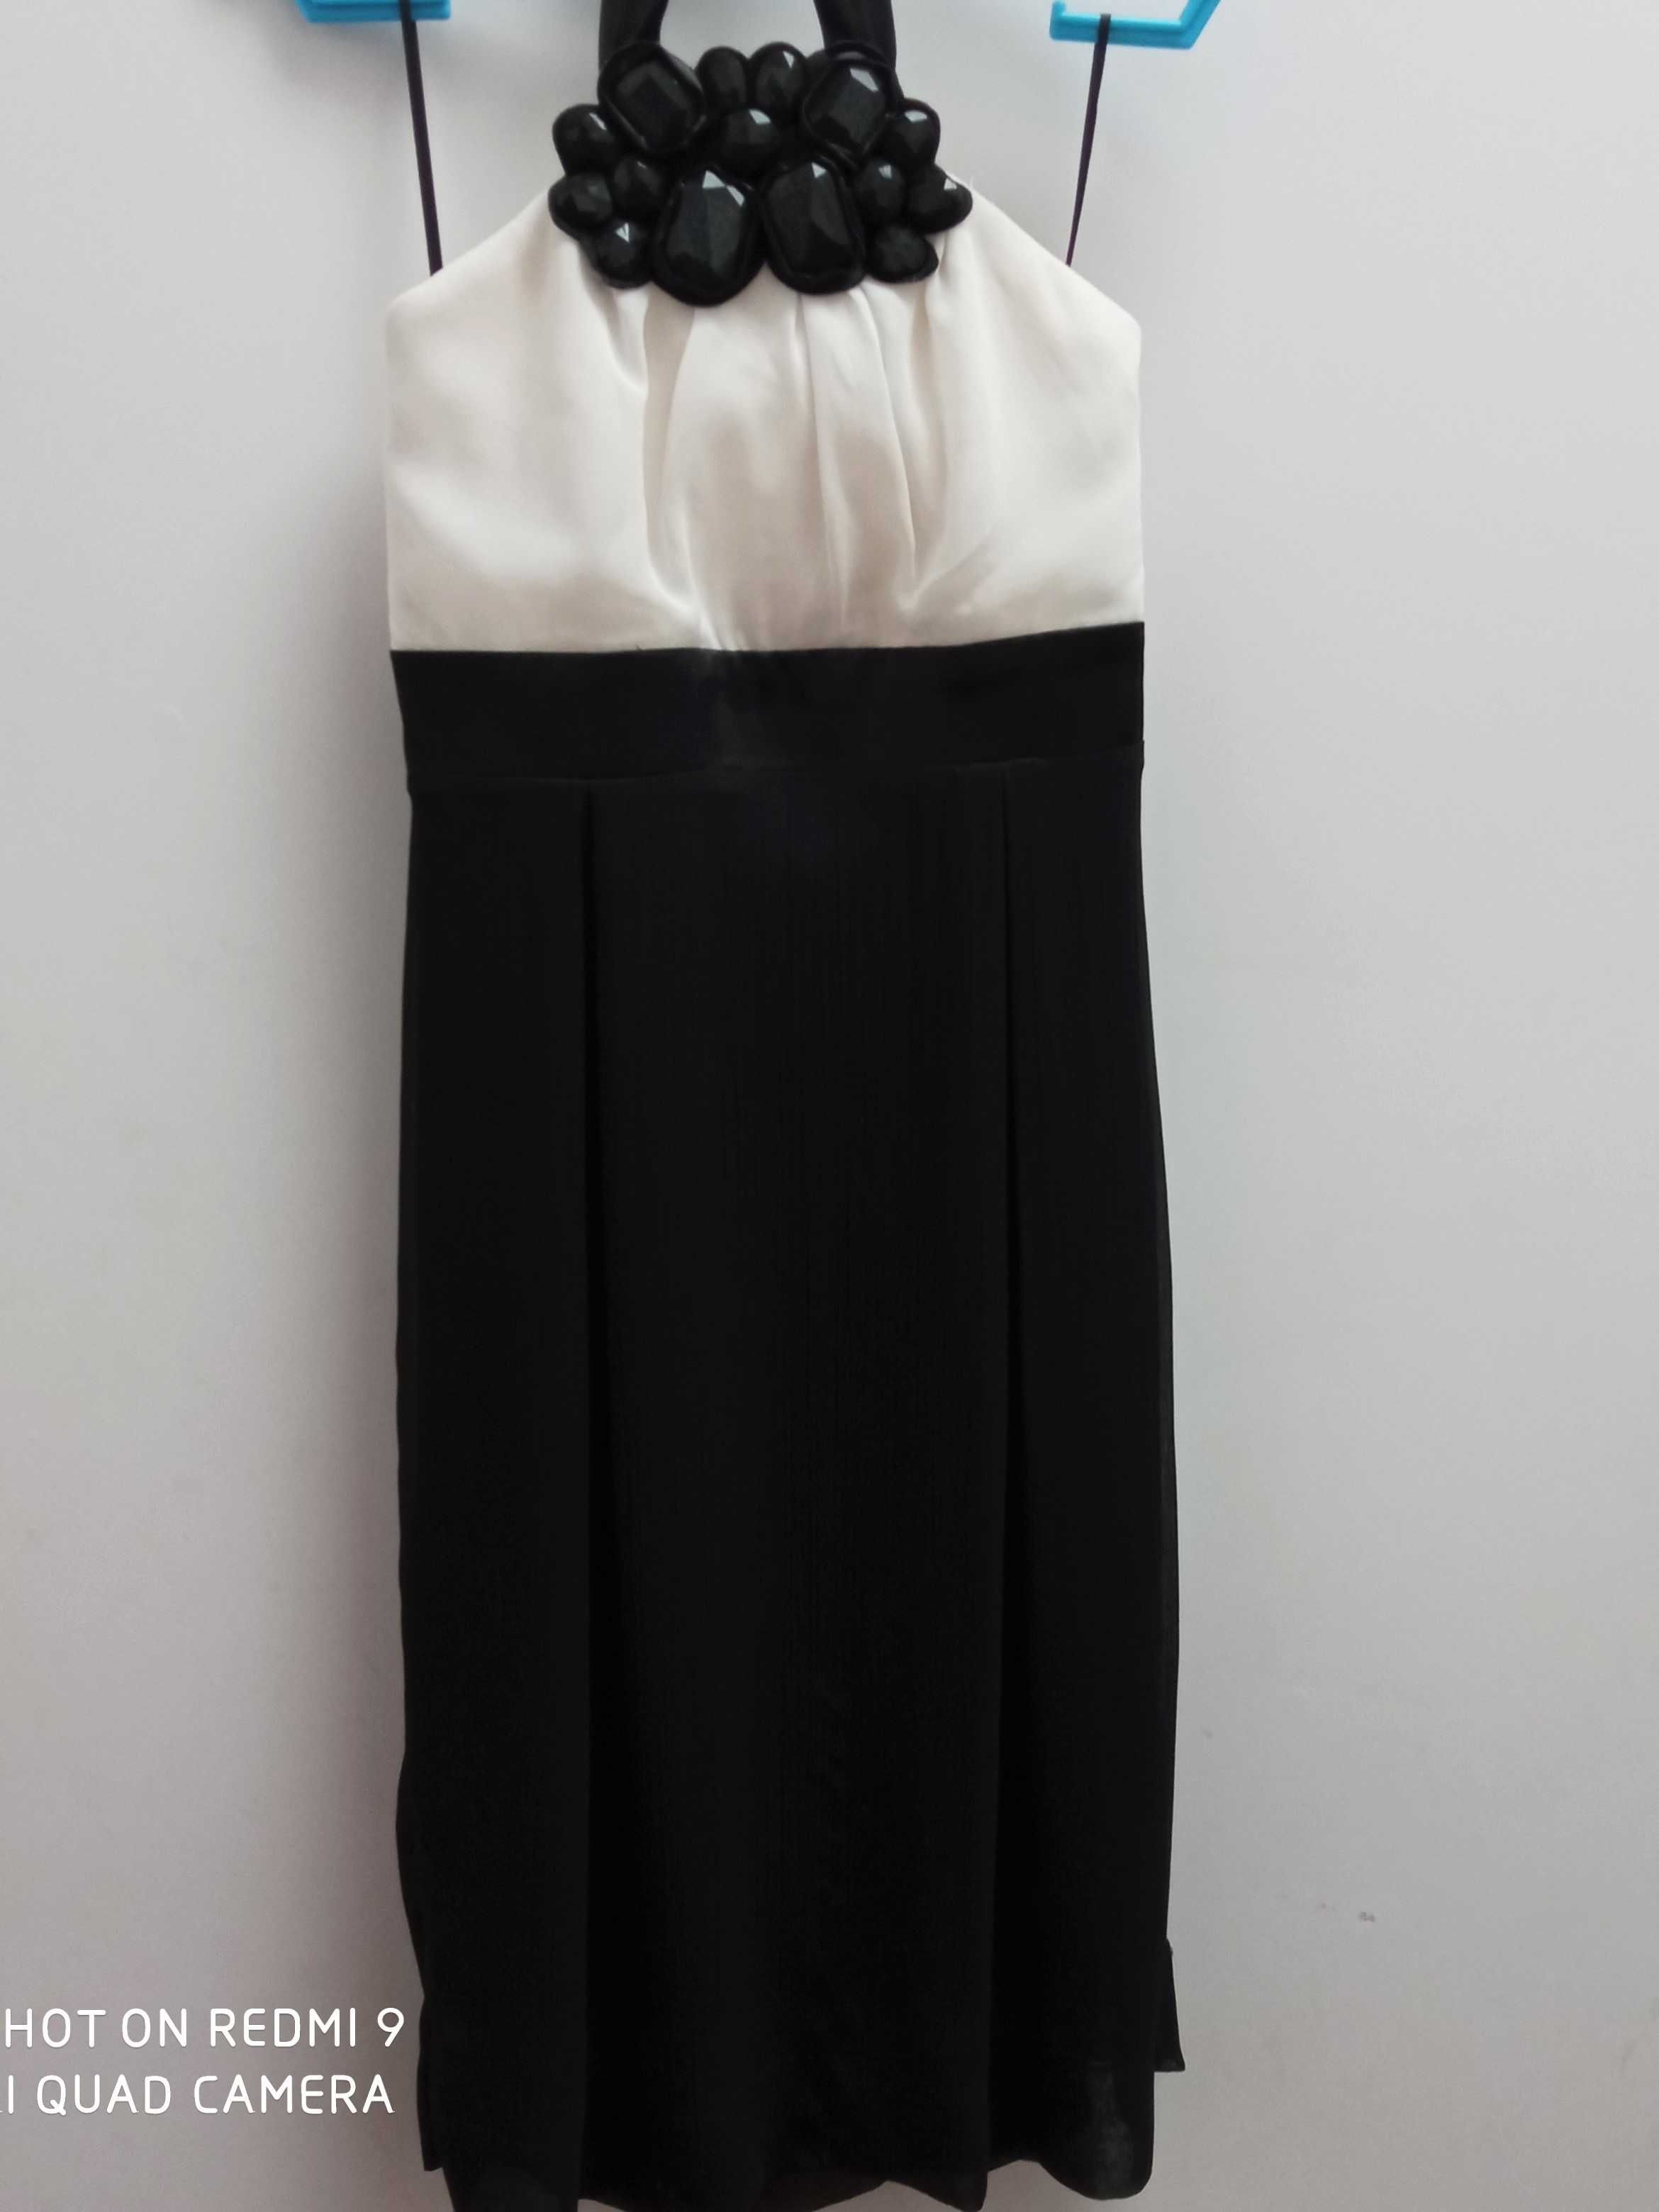 Biało-czarna suknia w stylu Audrey Hepburn - 34 XS studniówka